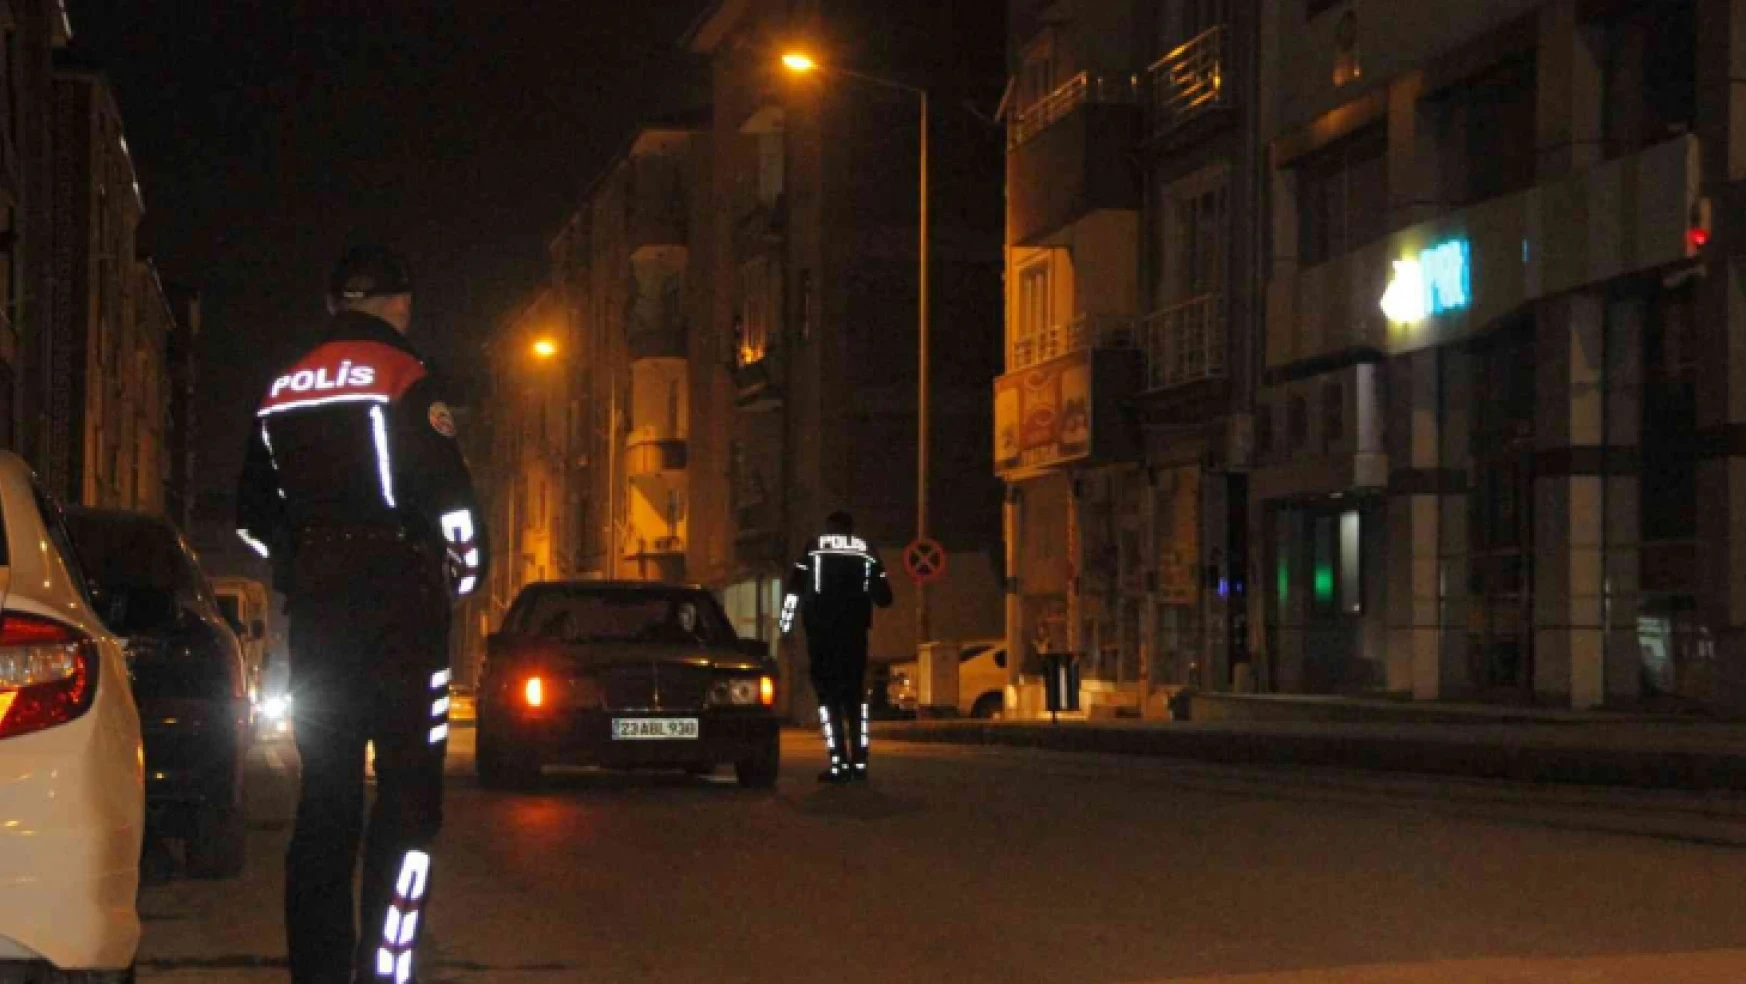 Elazığ'da polisten 'Dar Bölge' uygulaması